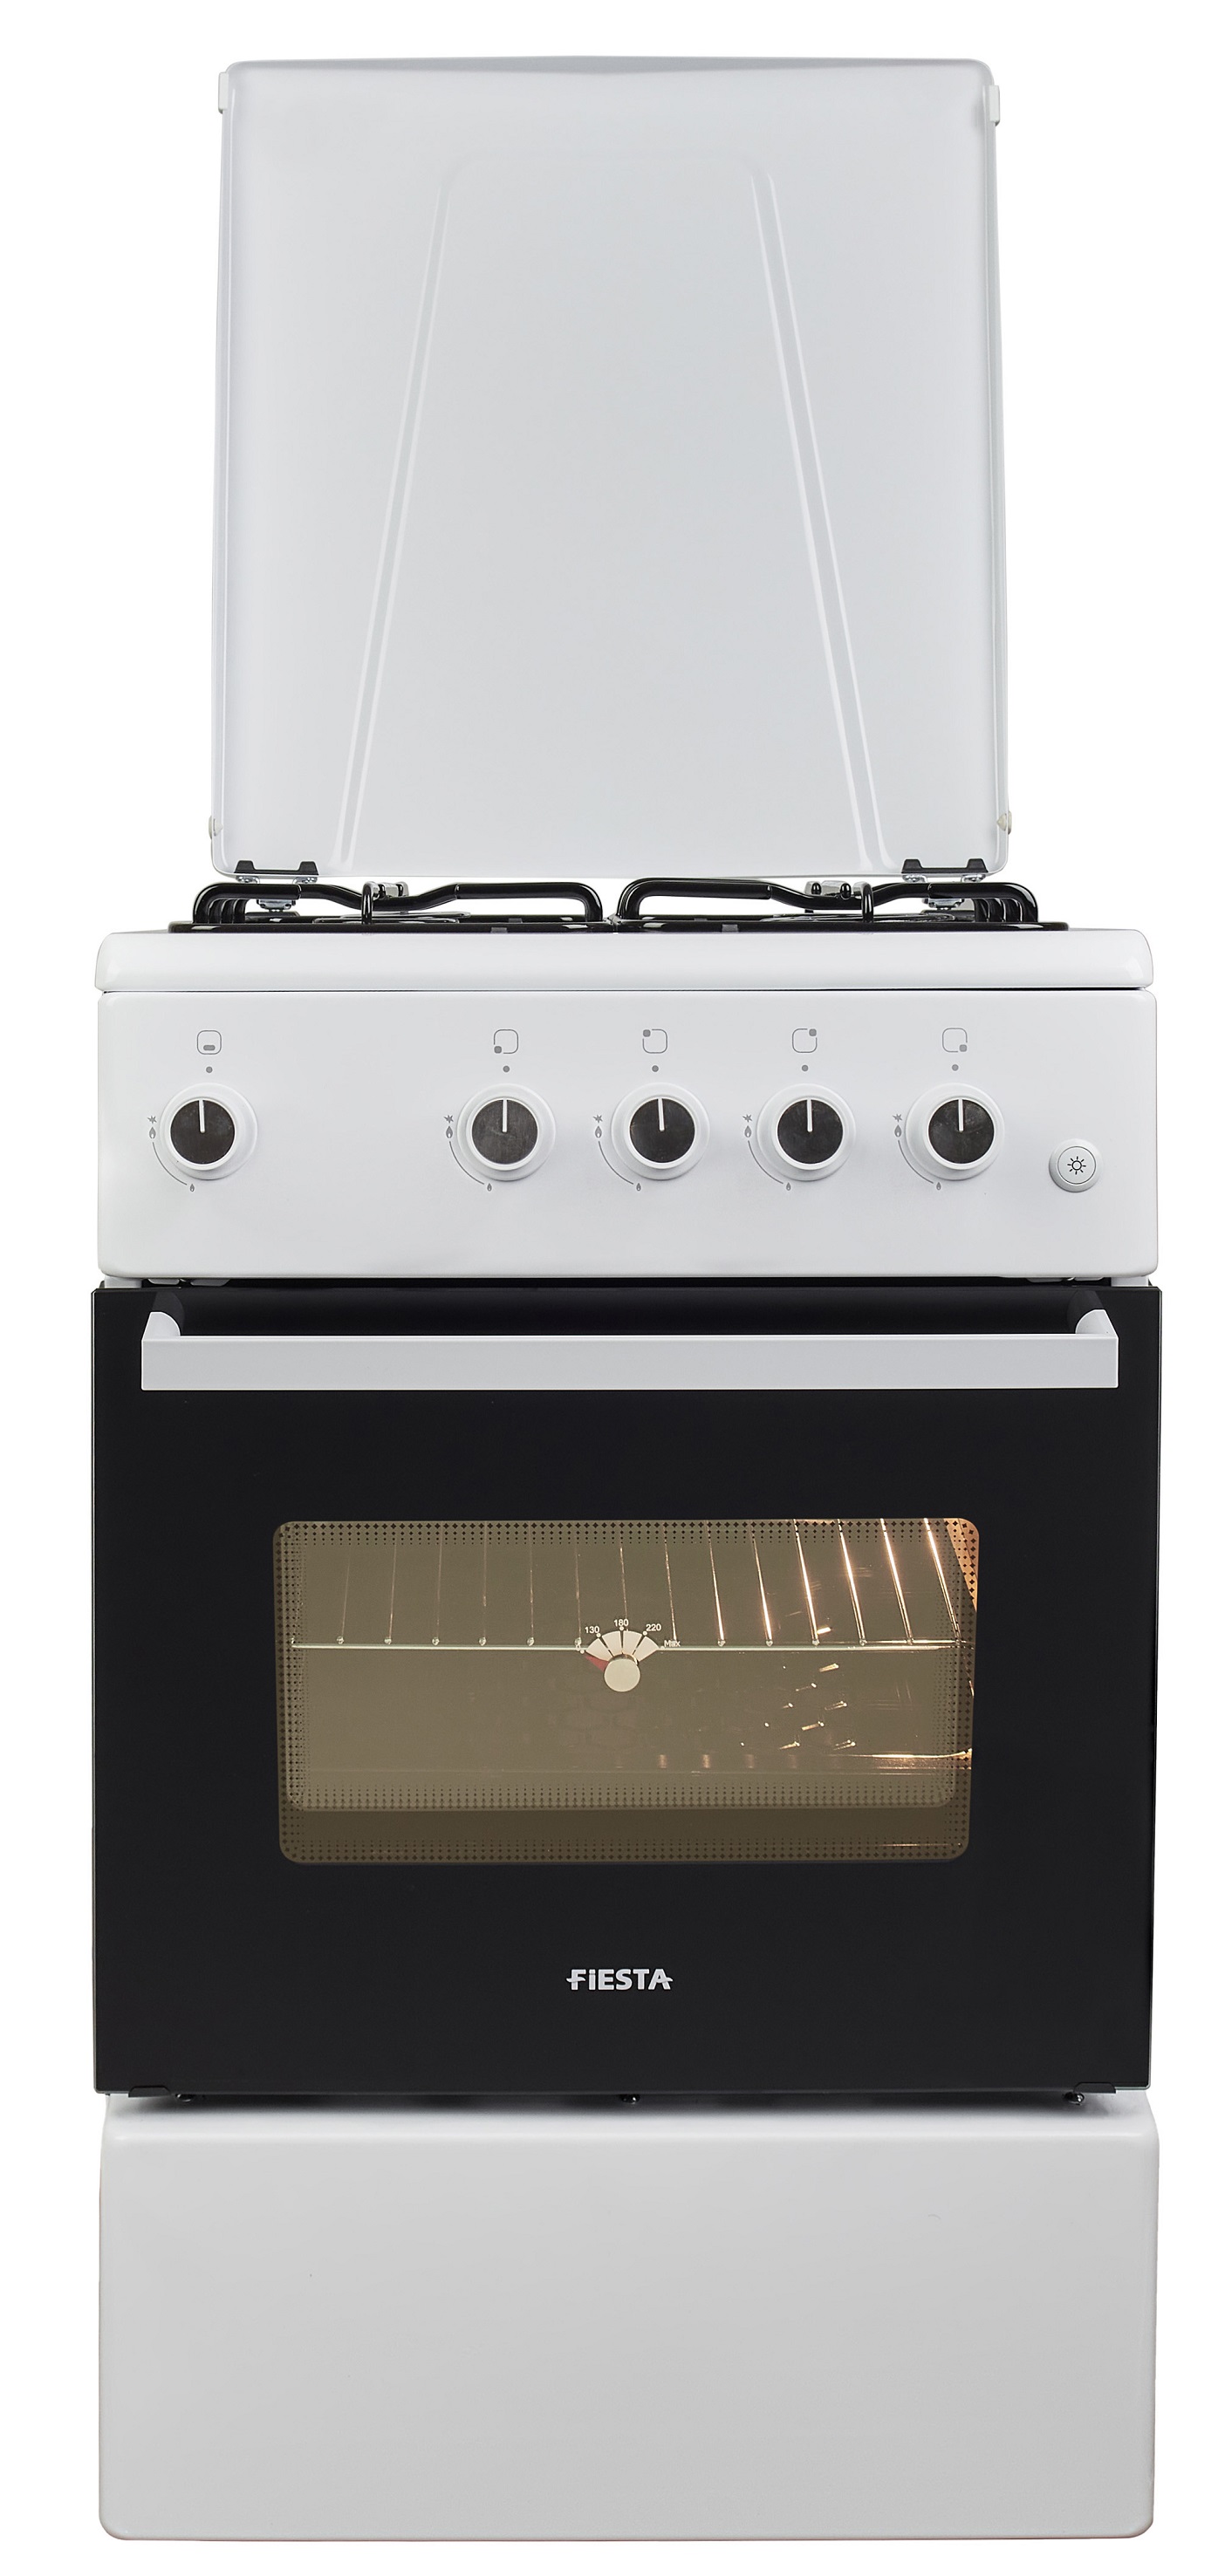 Кухонная плита Fiesta G 5403 SD-W в интернет-магазине, главное фото